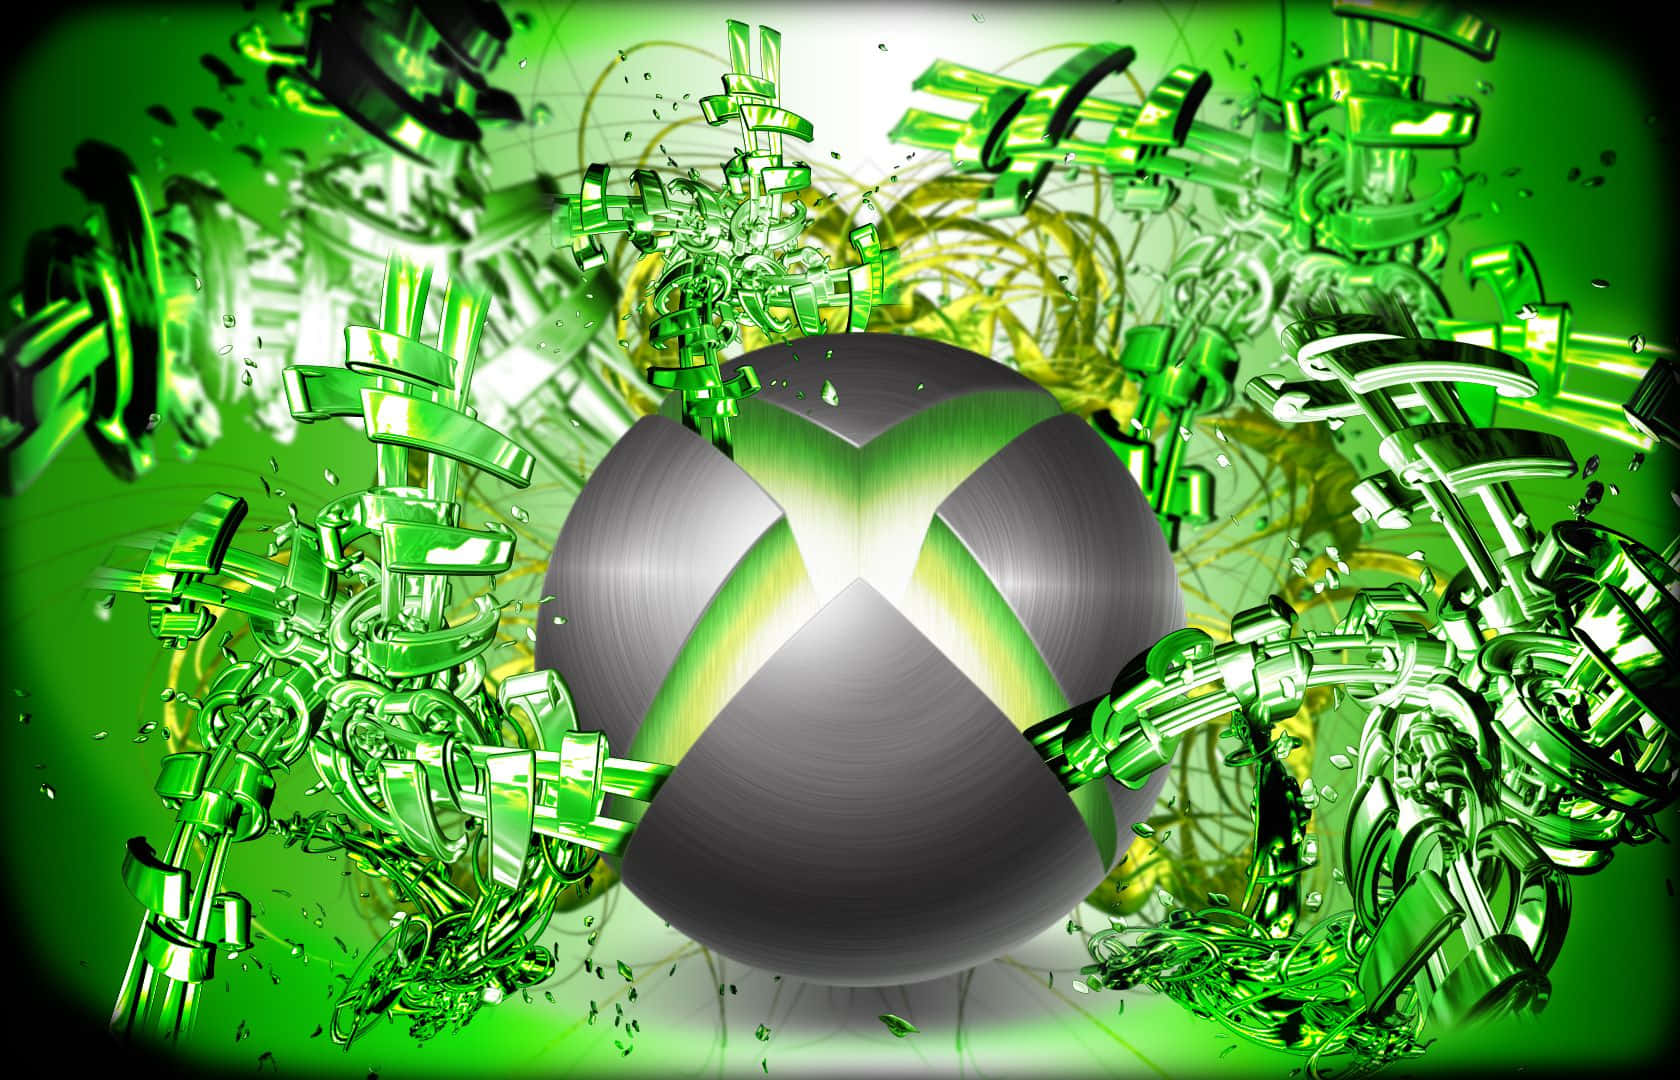 Nyd det bedste af gaming med Cool Xbox Console Wallpaper! Wallpaper